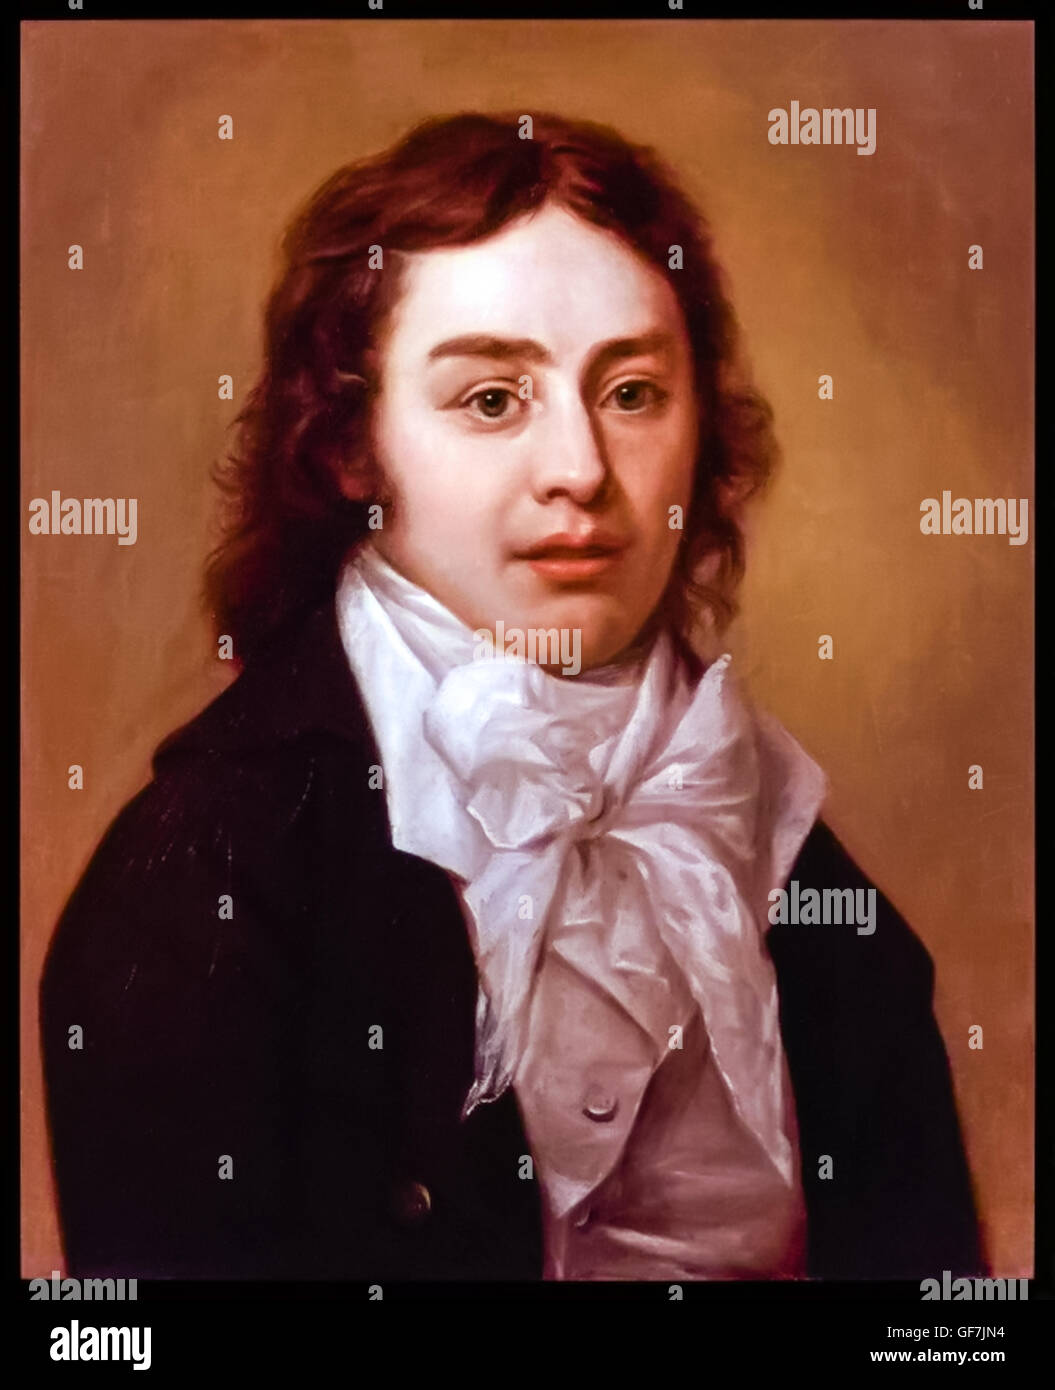 Samuel Coleridge (1772-1834) poeta inglese, critico letterario e filosofo. Dopo un dipinto ad olio da Peter Vandyke nel 1795. Foto Stock